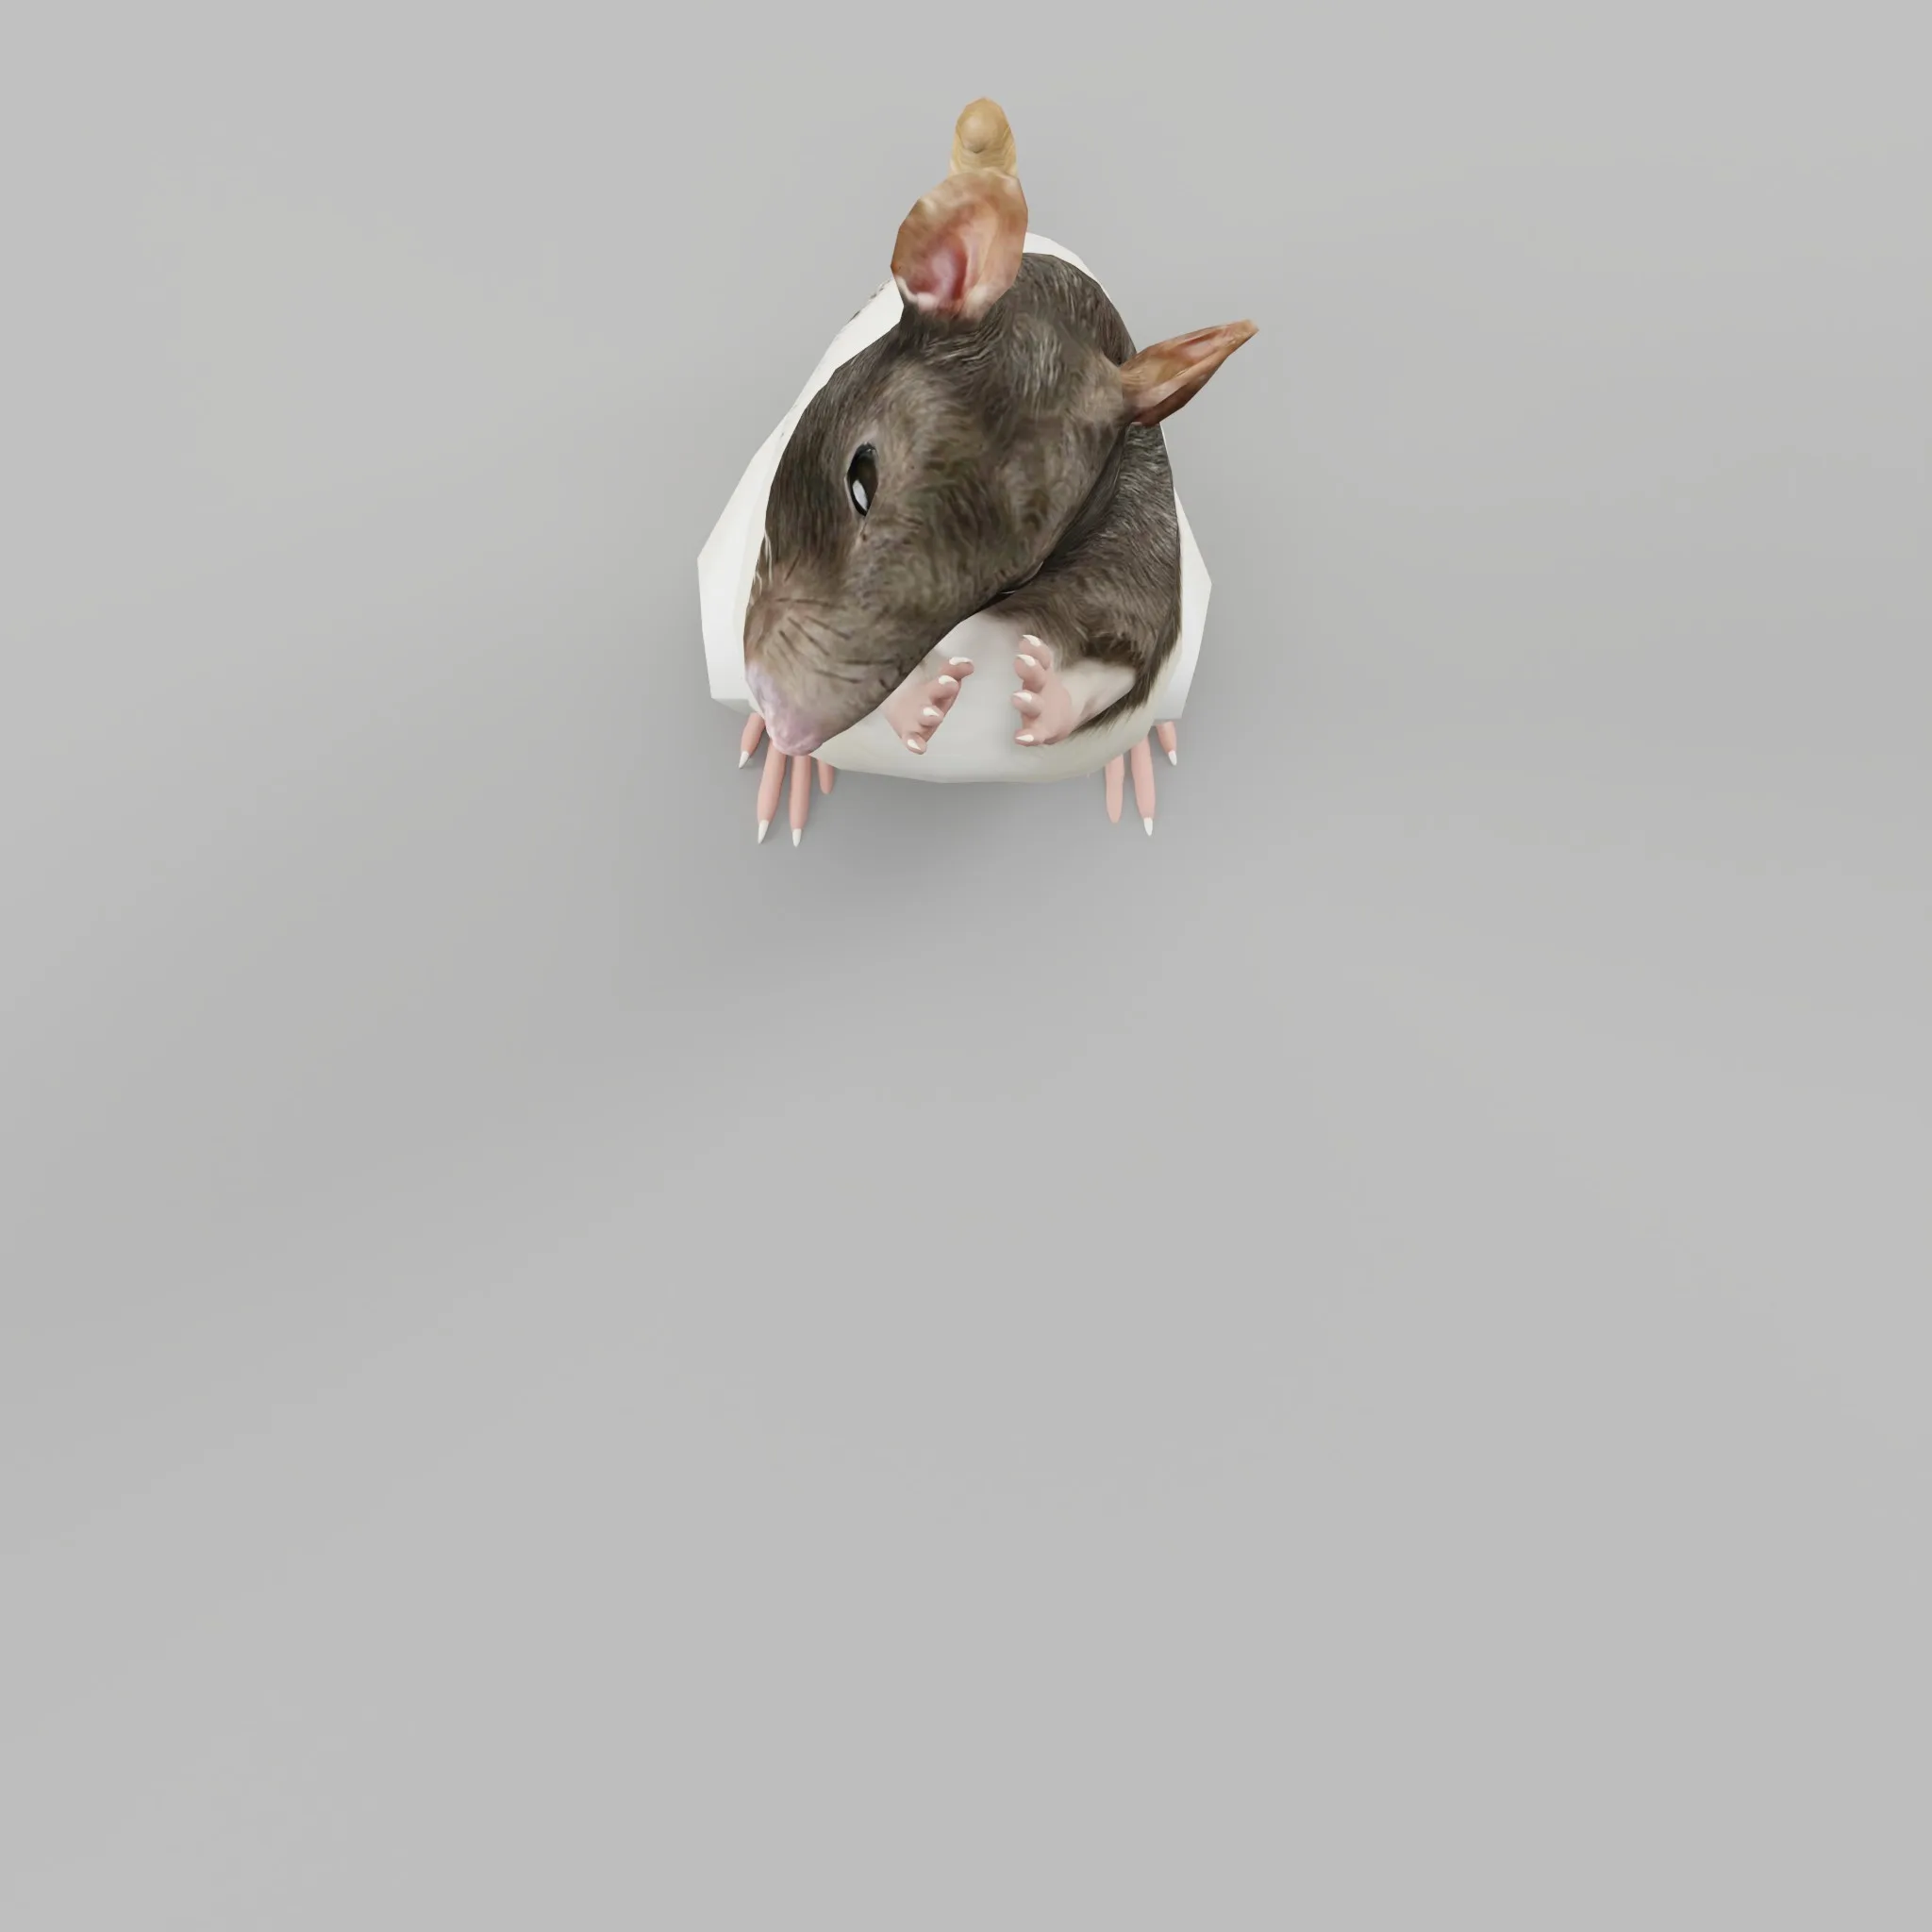 Common Rat